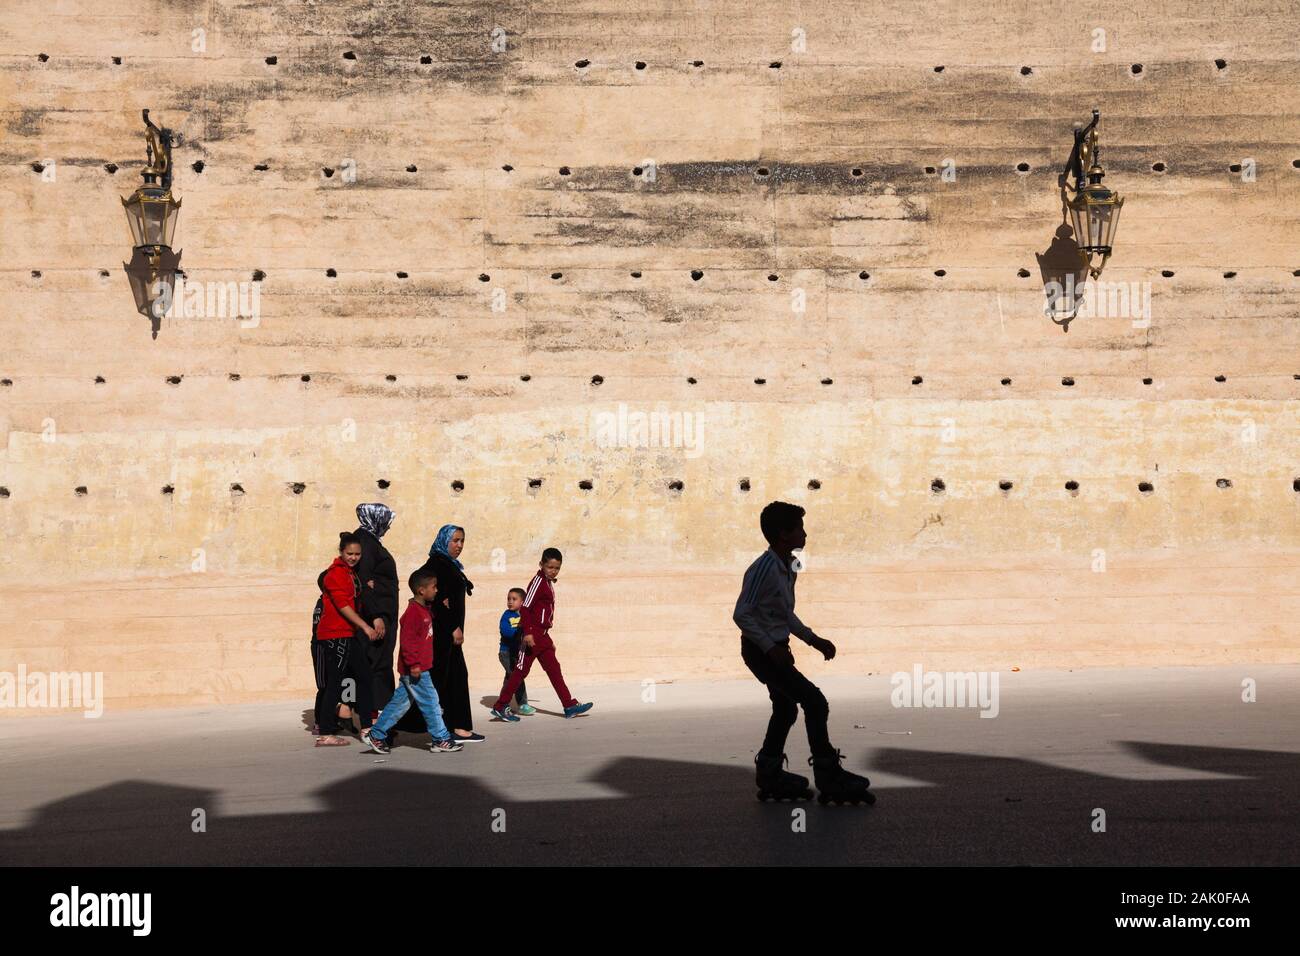 Tradizione e modernità - boy con i pattini e i pedoni (donne e bambini) nel pomeriggio scenario delle mura della città di Fès (fez), Marocco Foto Stock